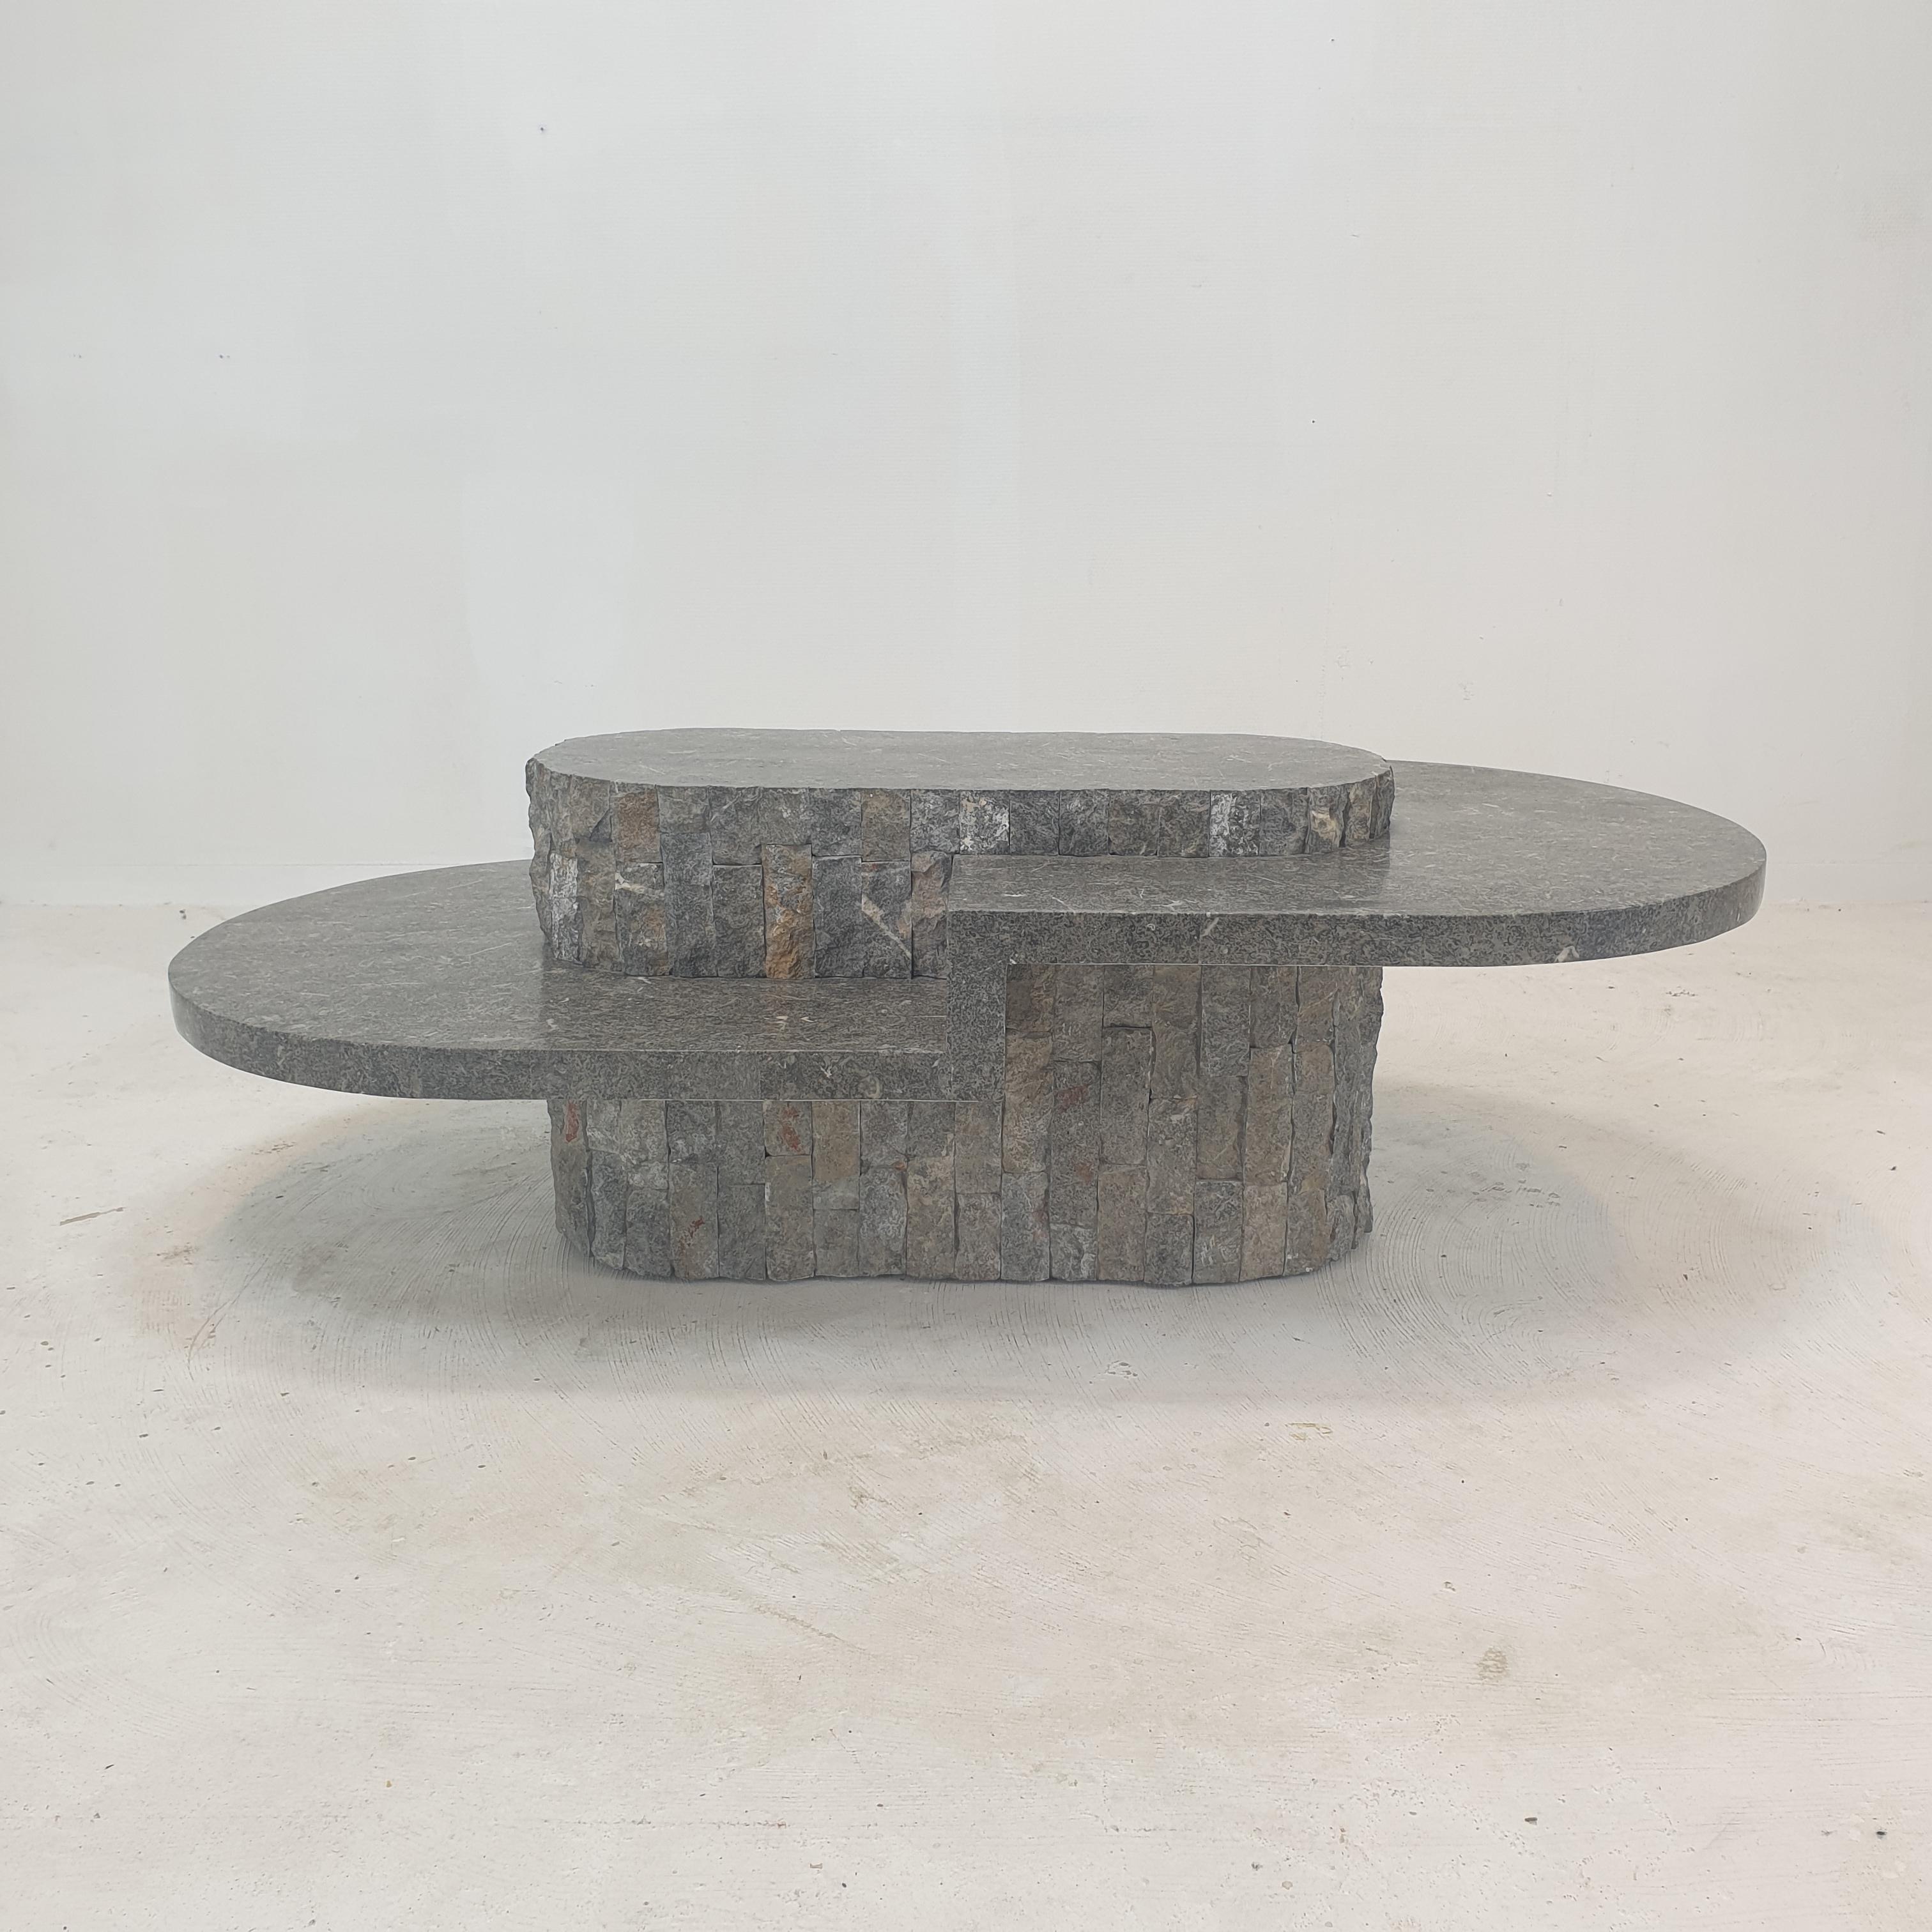 Rara y muy bonita mesa de centro o auxiliar ovalada de Magnussen Ponte, años 80.

Esta impresionante mesa está hecha de piedra de Mactan o Piedra Fósil, de bordes rugosos.

¡Es una pieza única!

Trabajamos con empaquetadores y transportistas